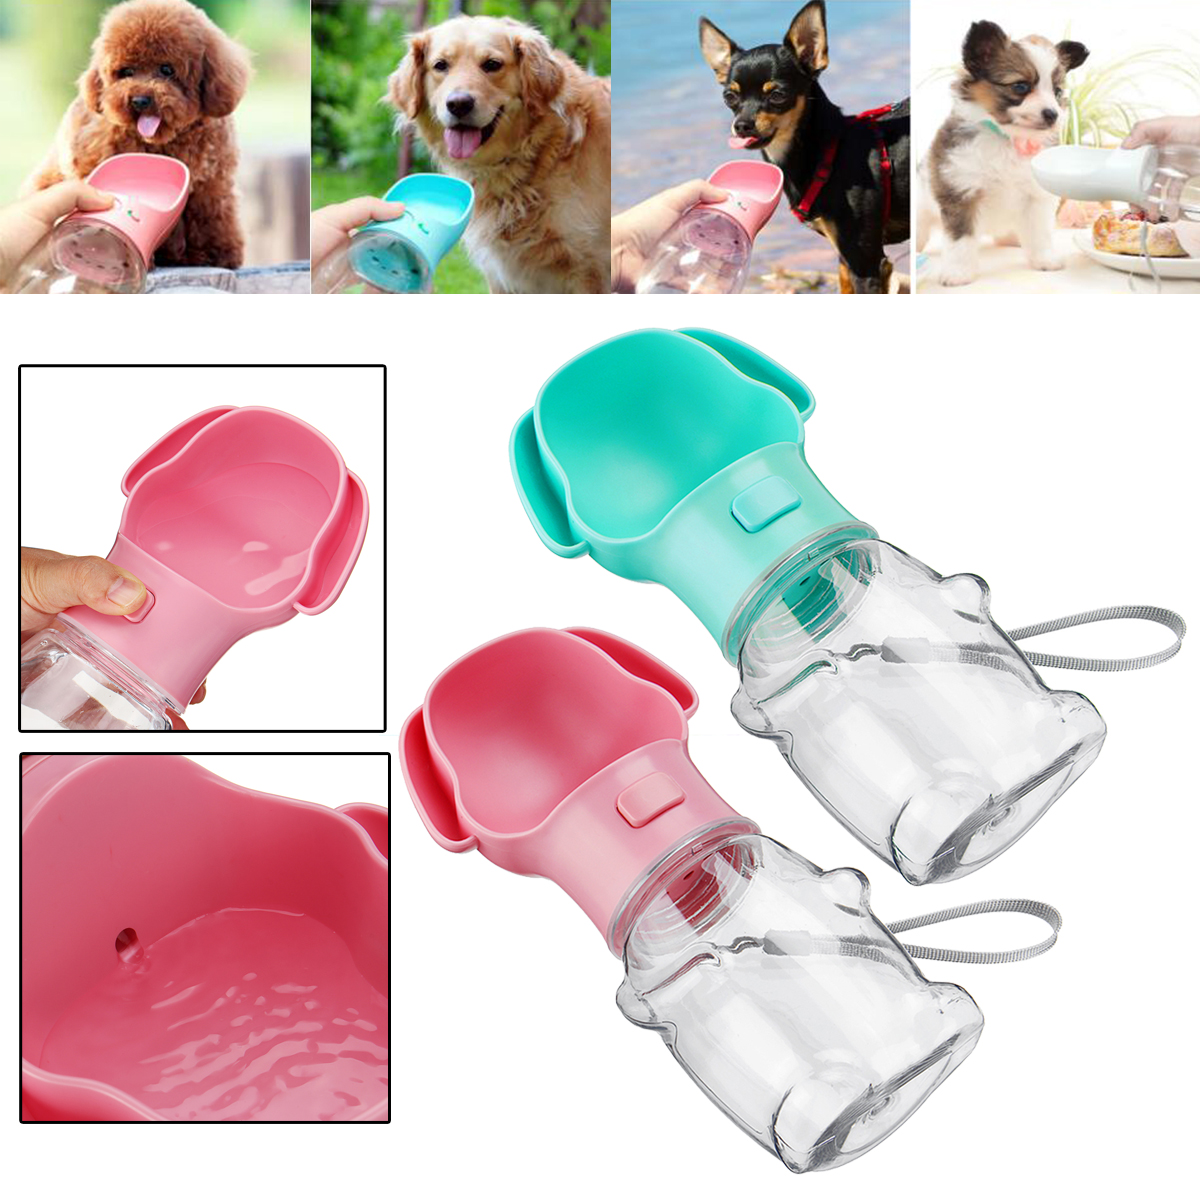 

500ml Portable Pet Travel Water Bottle Dispenser Feeder Cat Dog Drinking Bowl